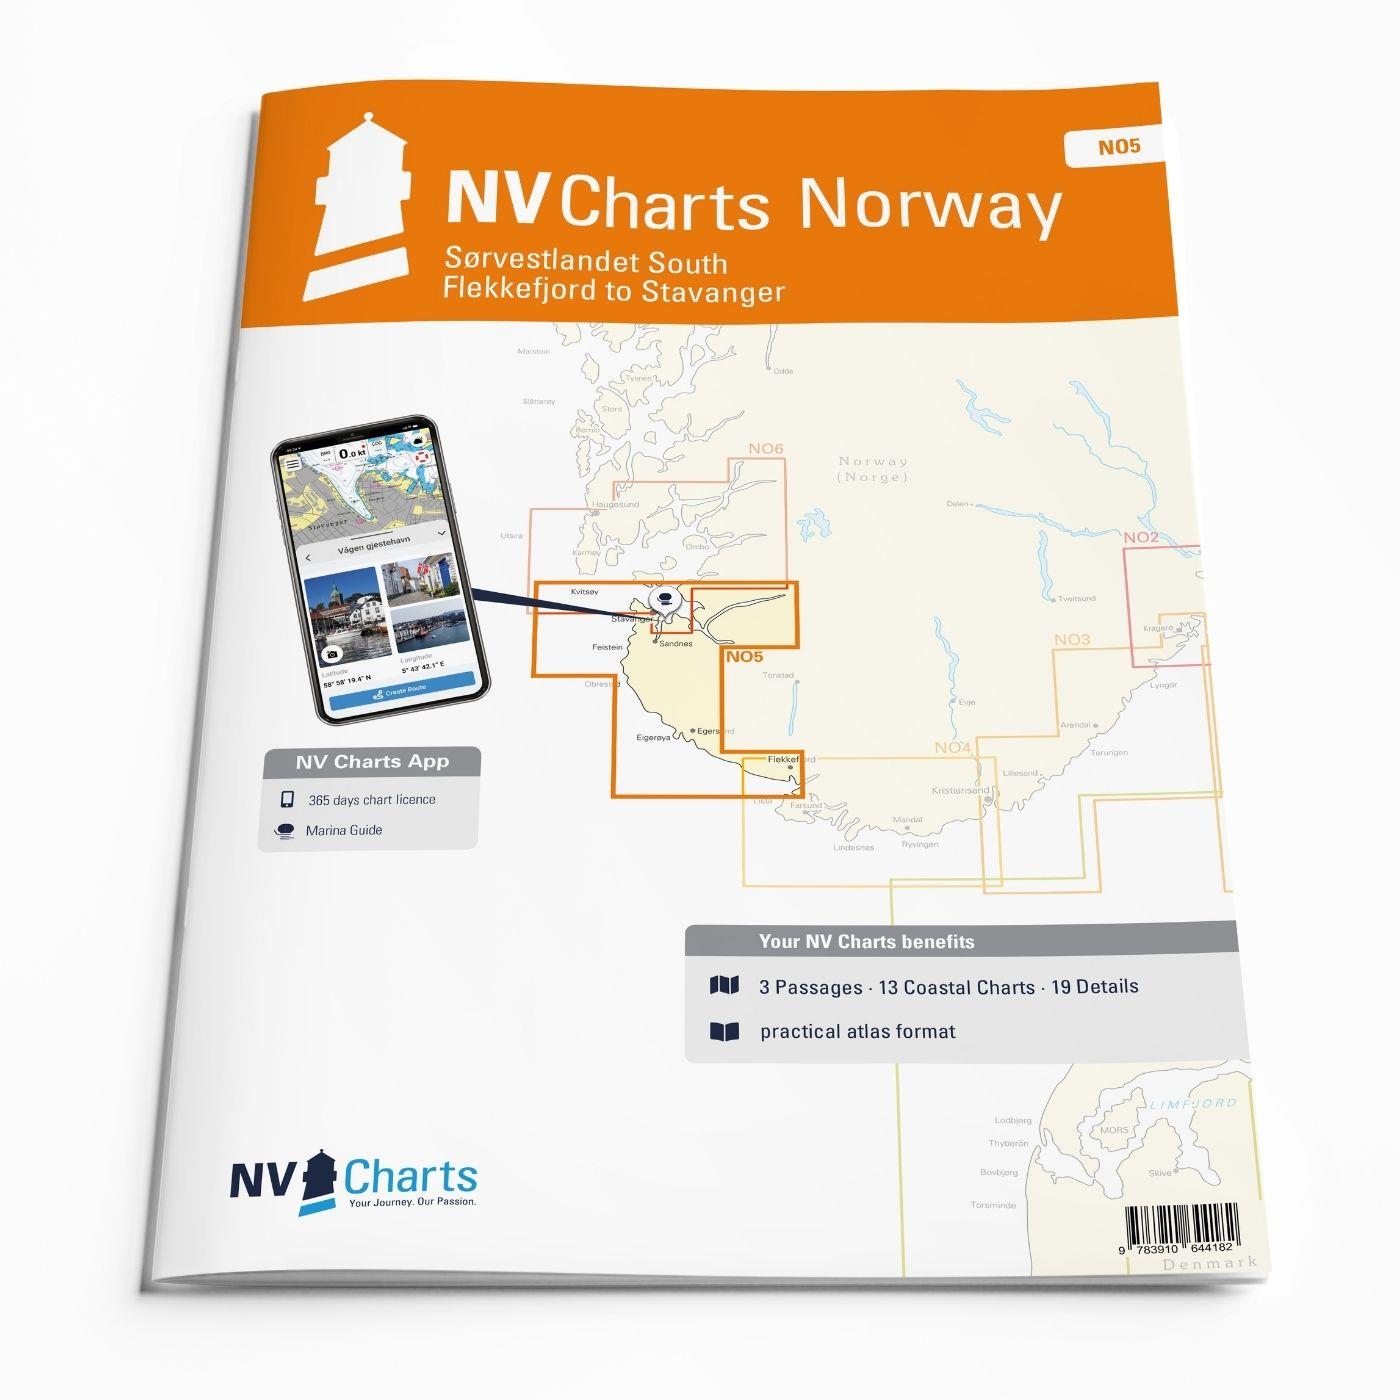 NV Charts Norway NO5 - Sørvestlandet South - Flekkefjord to Stavanger